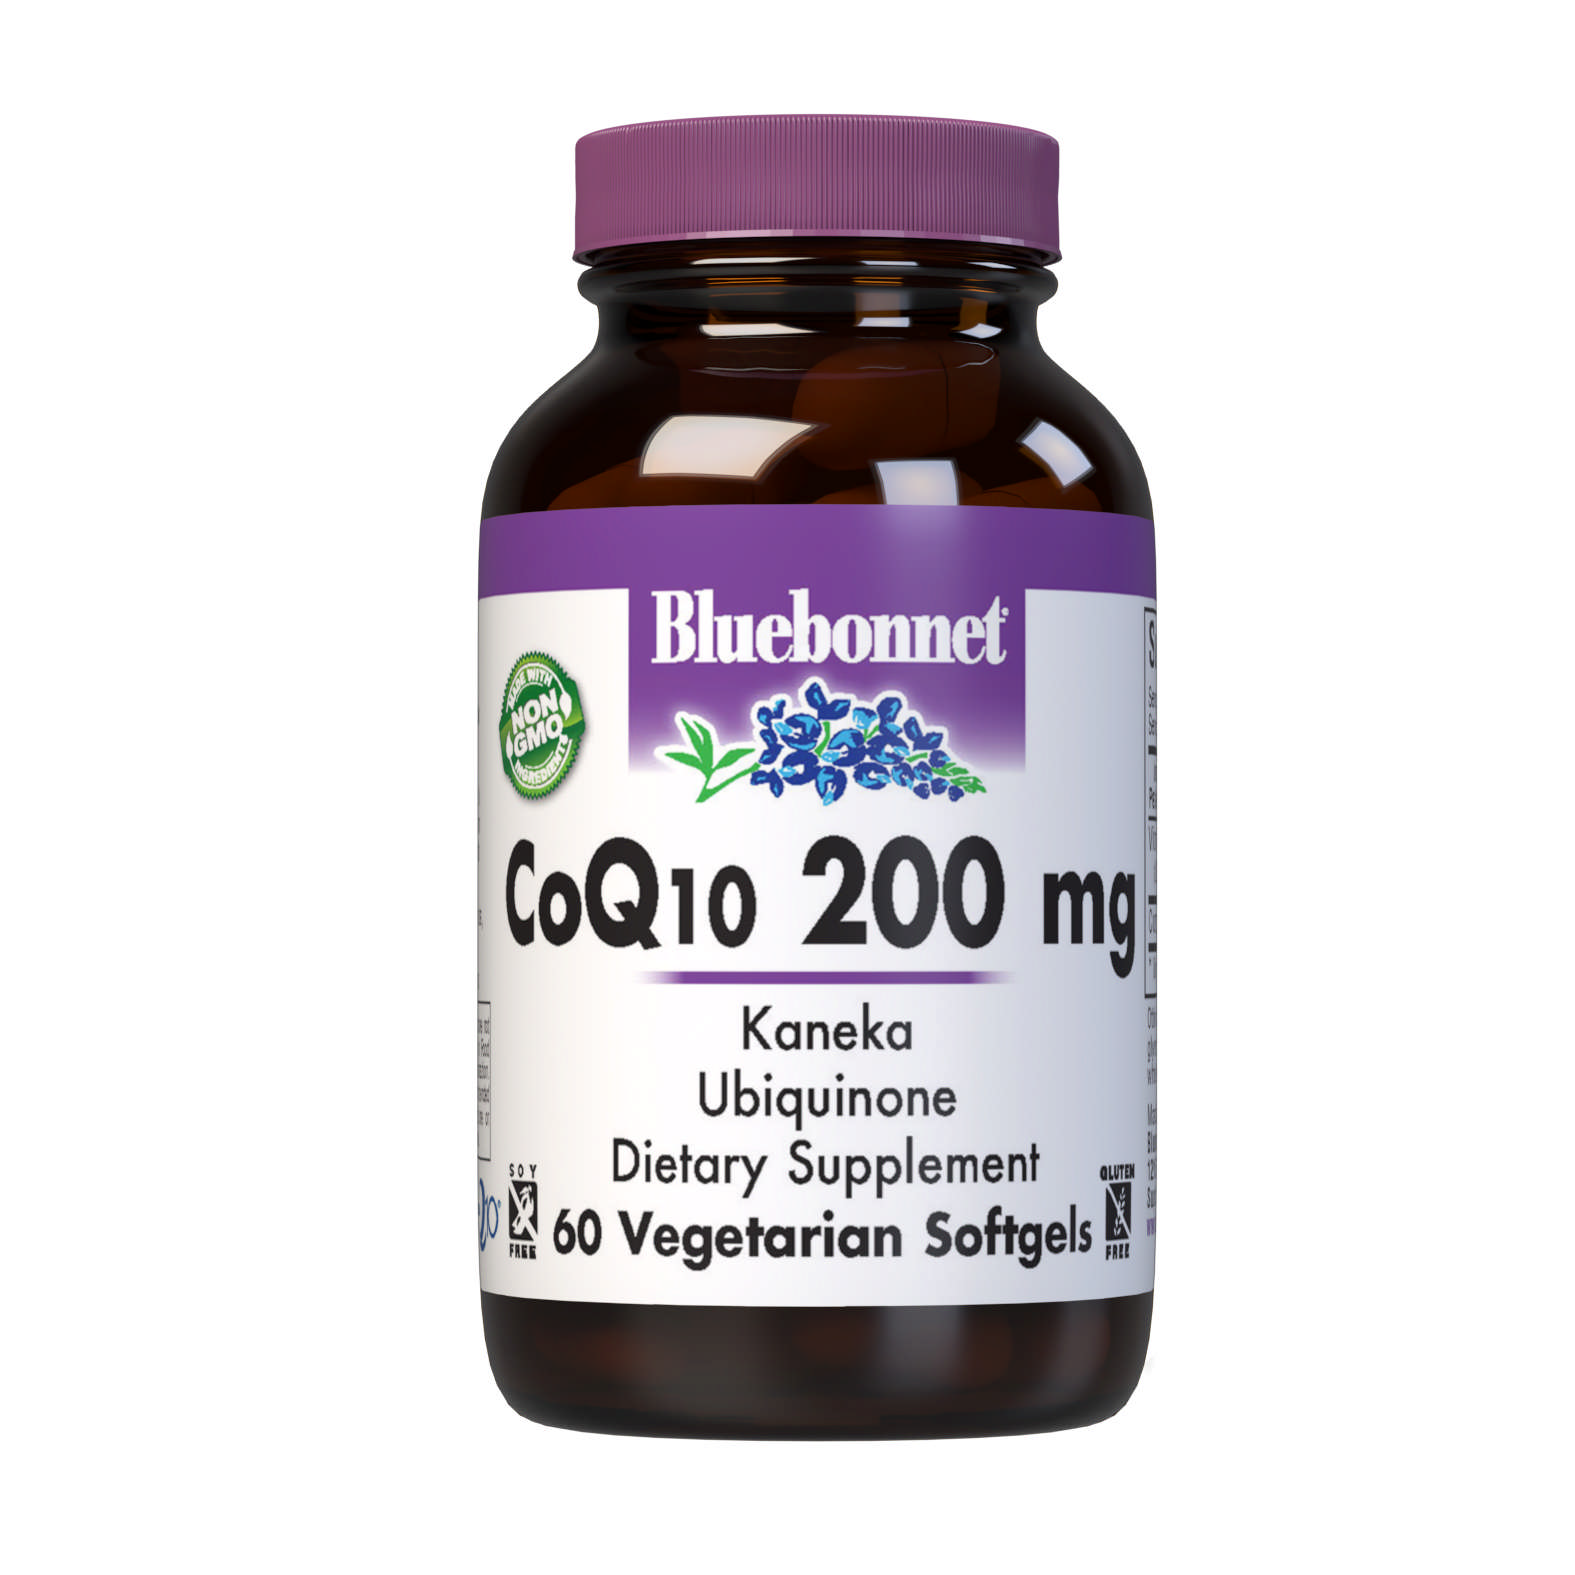 Bluebonnet - Coq10 200 mg softgel